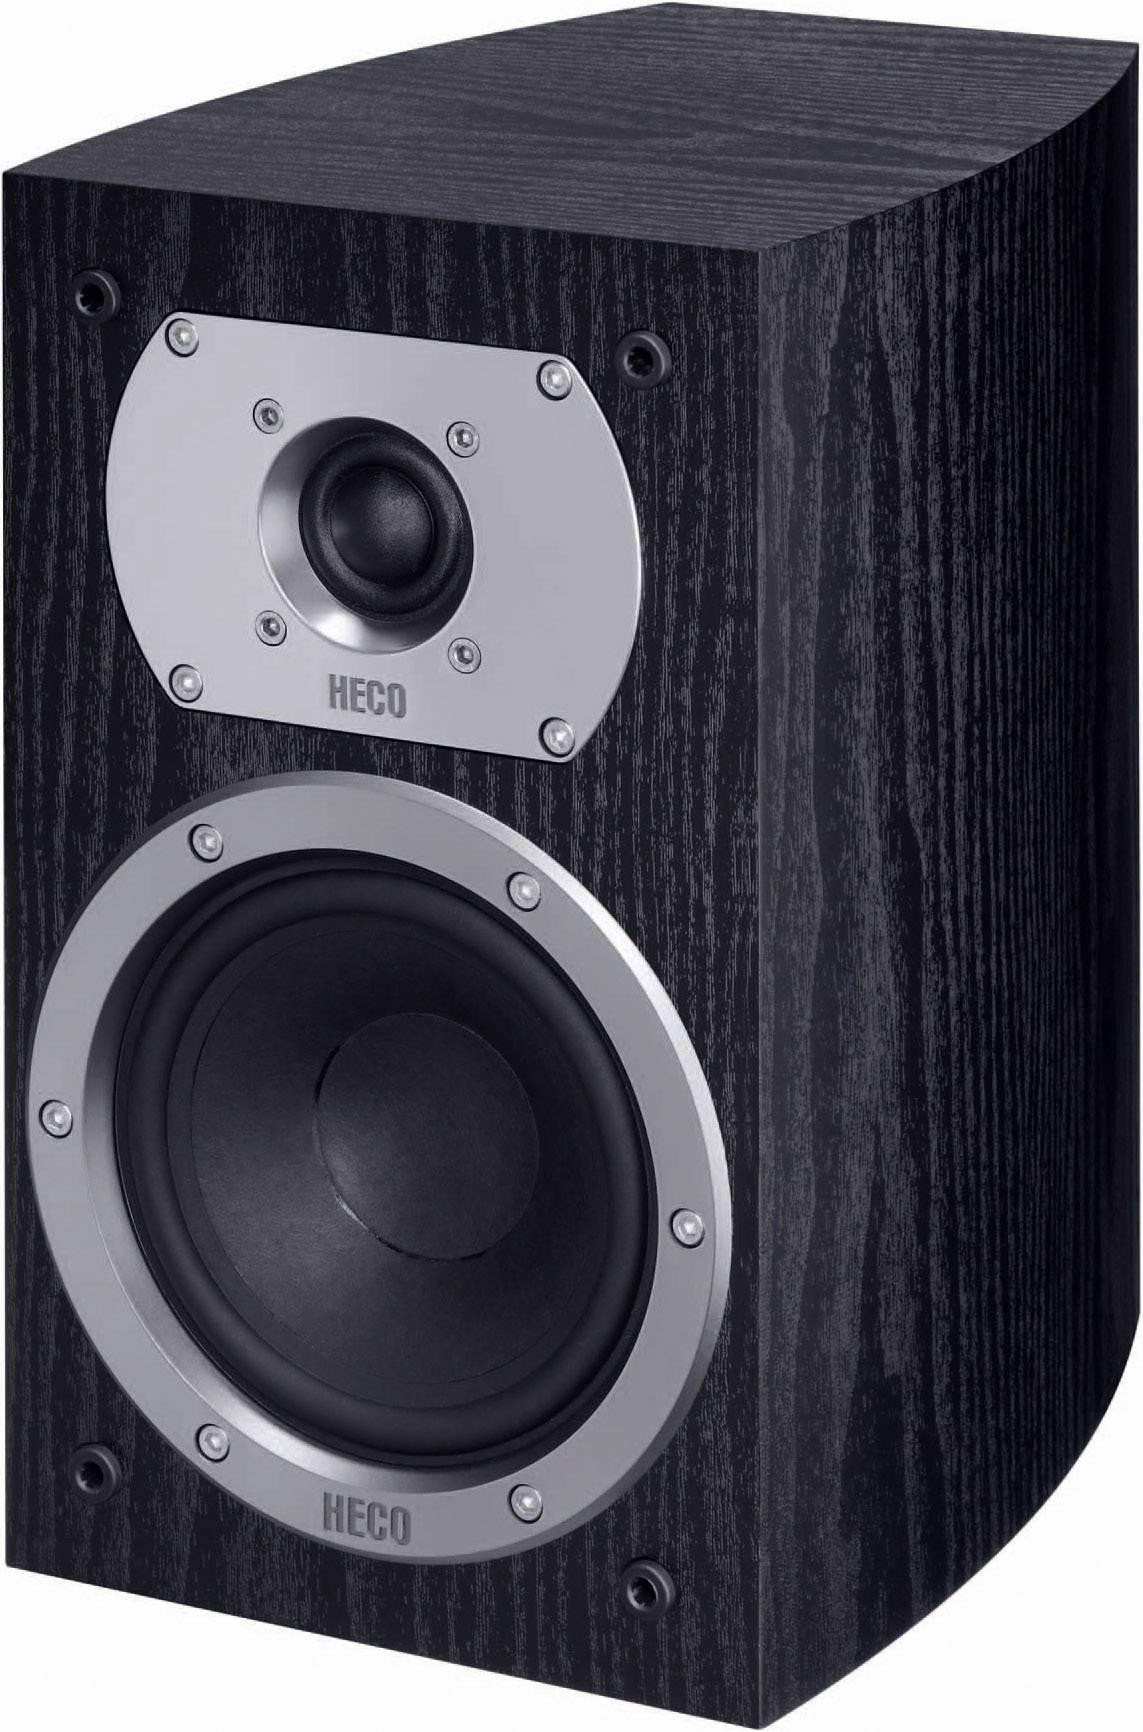 HECO Victa 202 speaker Black 110 W 35 Hz Hz 1 Pair | Conrad.com